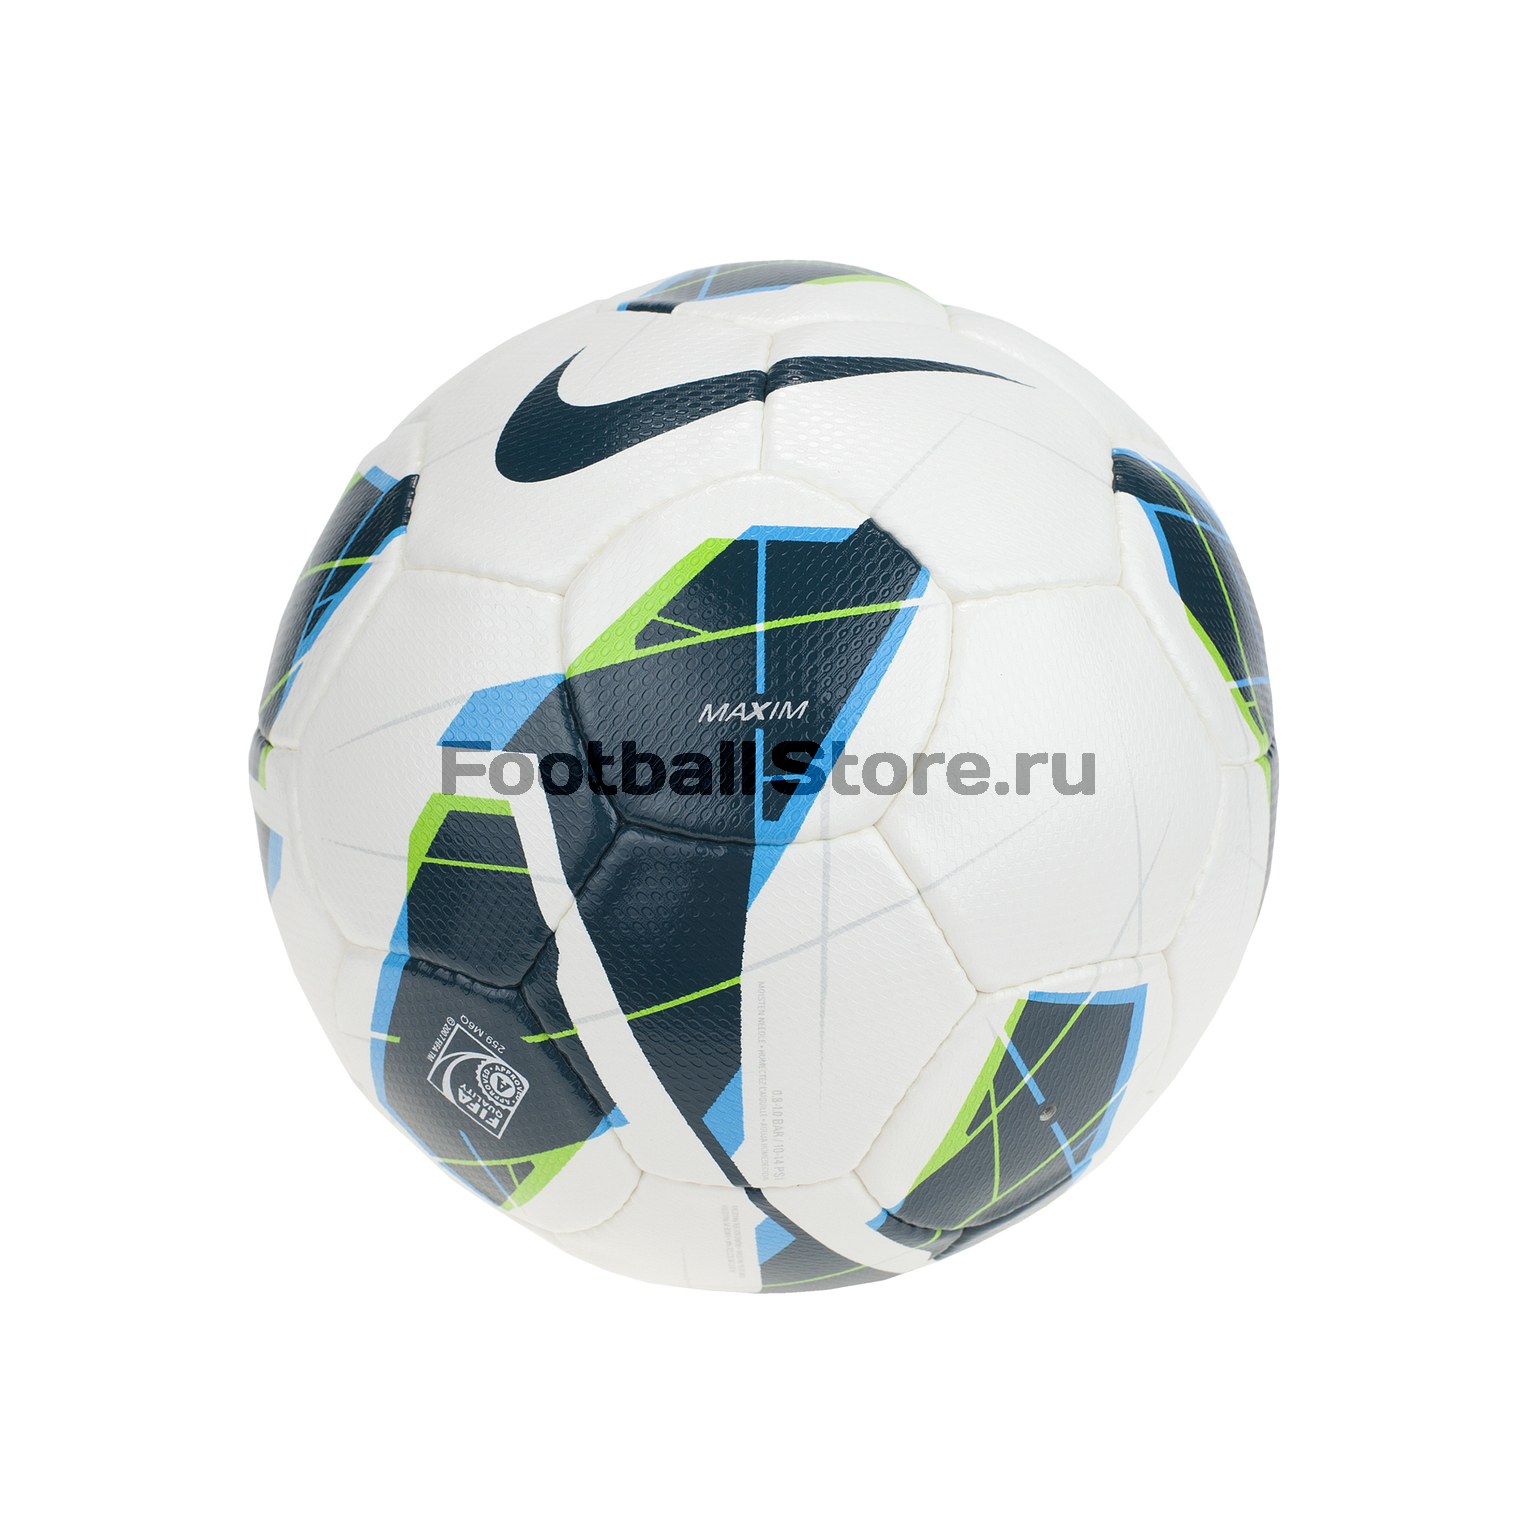 Мяч футбольный Nike Maxim SC2126-144